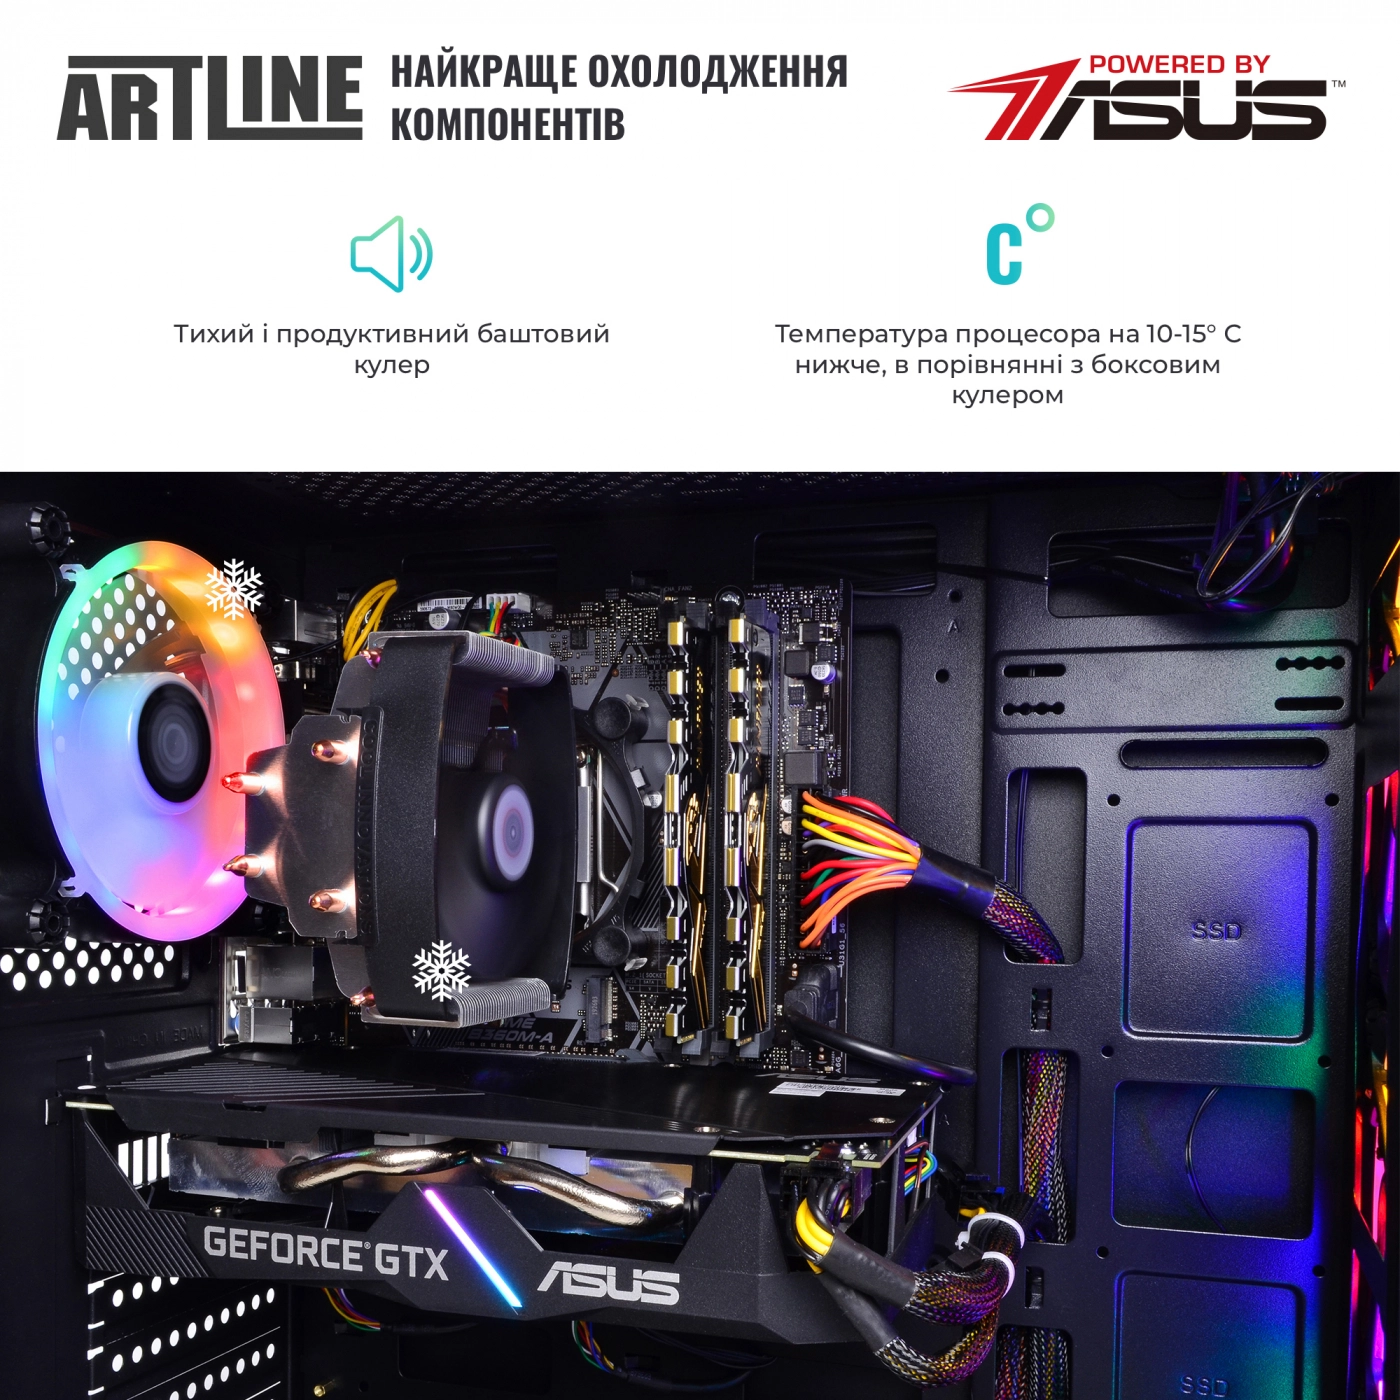 Купить Компьютер ARTLINE Gaming X39v65 - фото 6